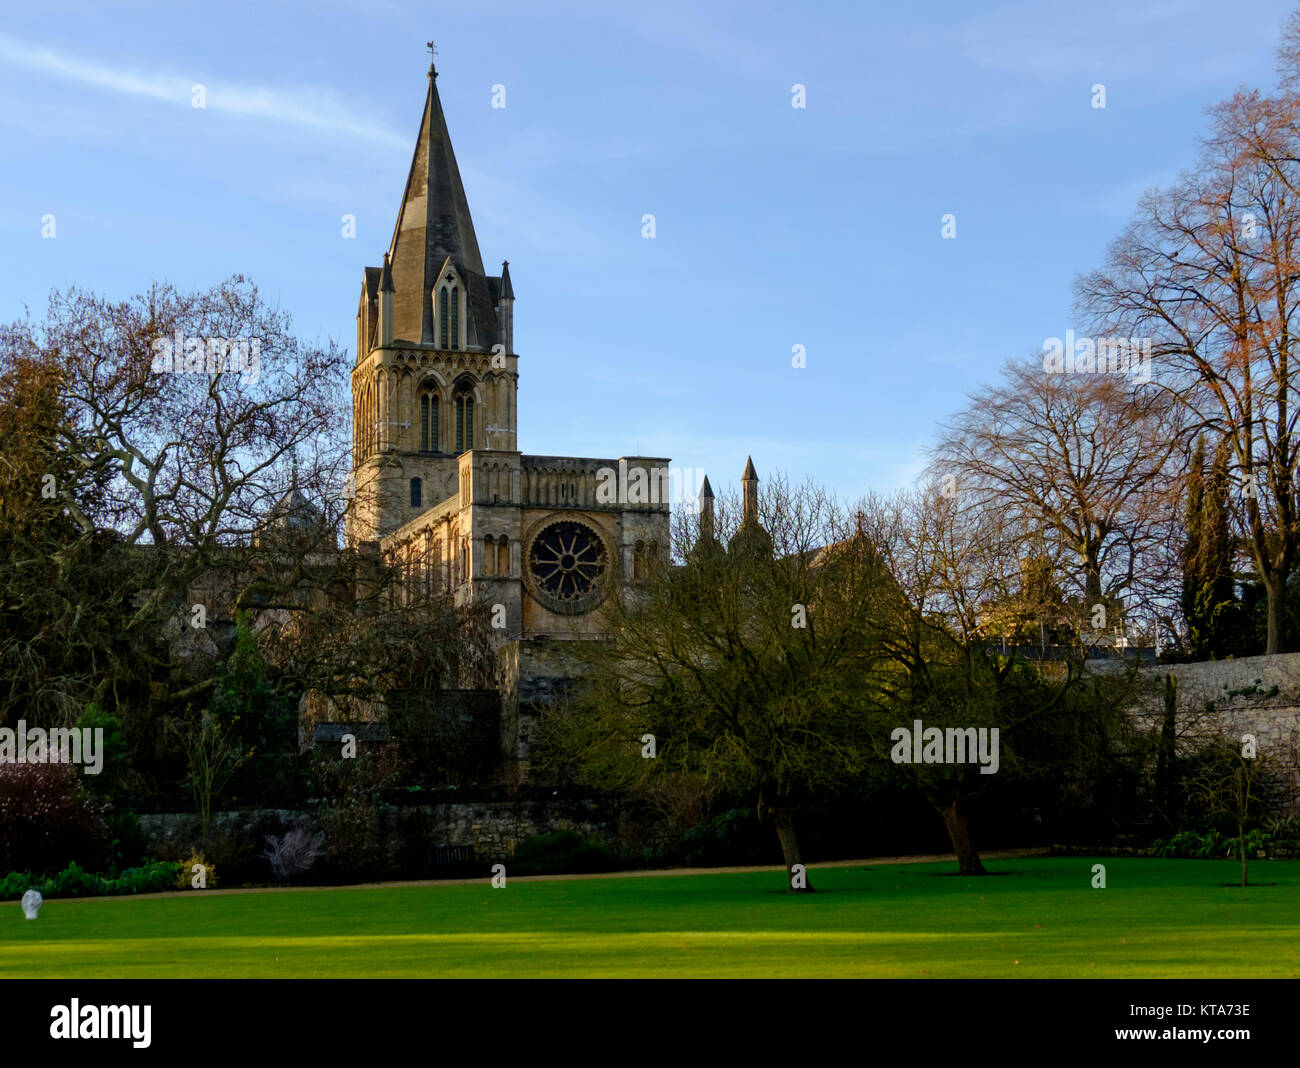 Rund um die Universität von Oxford Dezember Christus Kirche 2017 Stockfoto